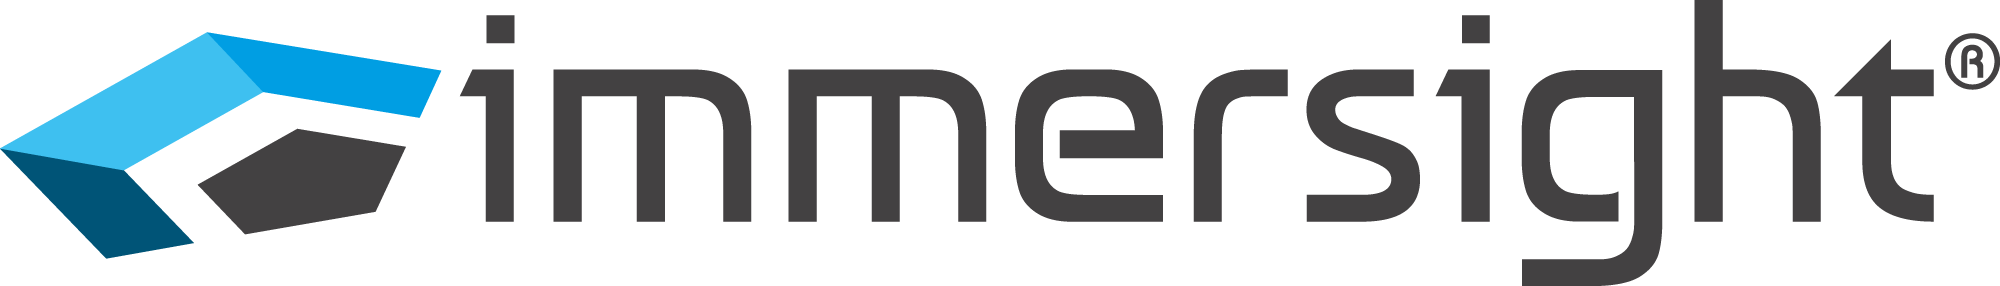 
			immersight_logo
		